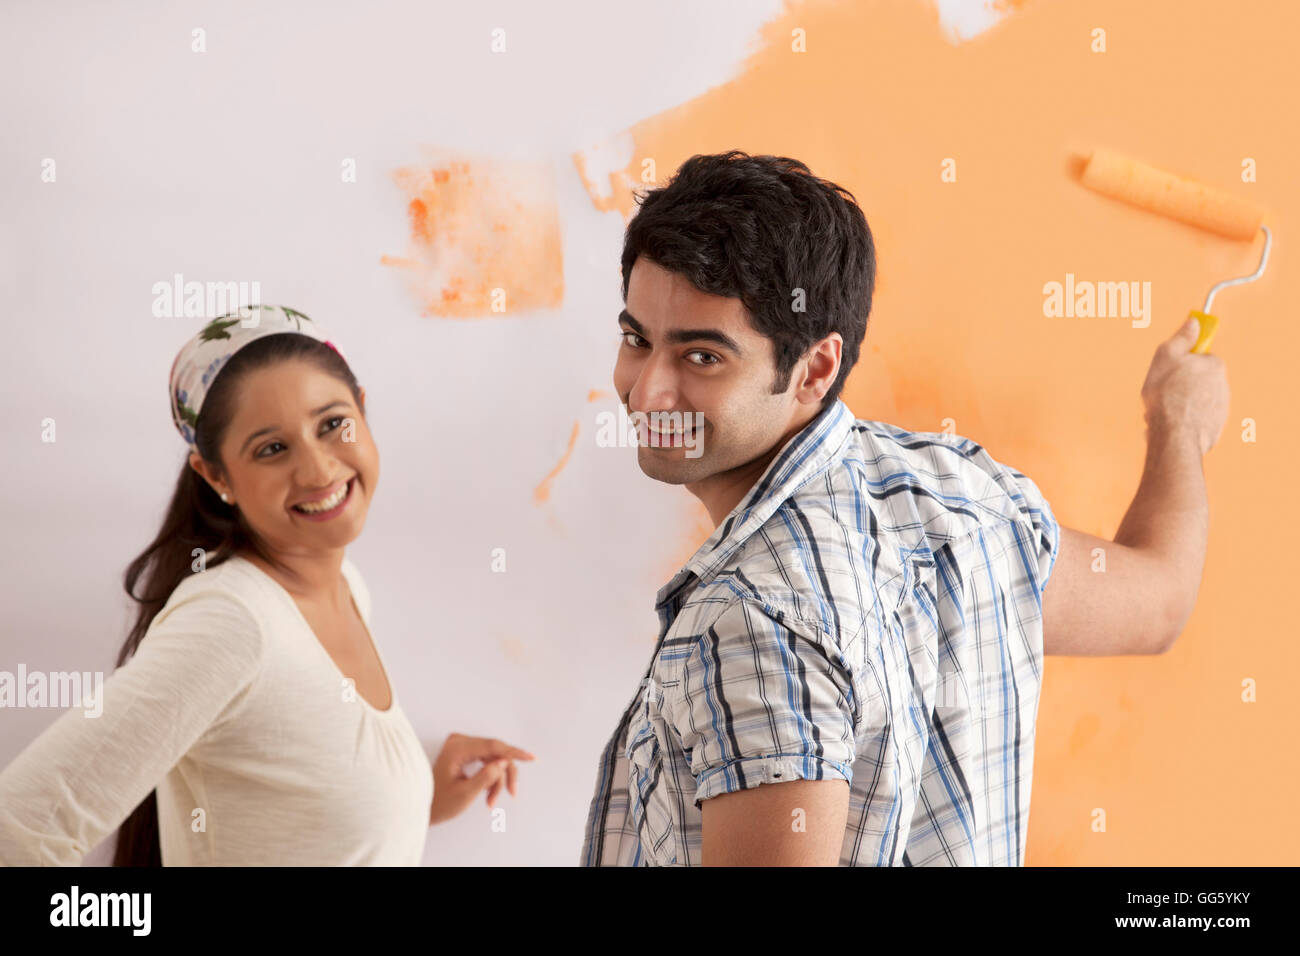 Portrait of smiling young man with woman l'application de peinture orange sur le mur Banque D'Images